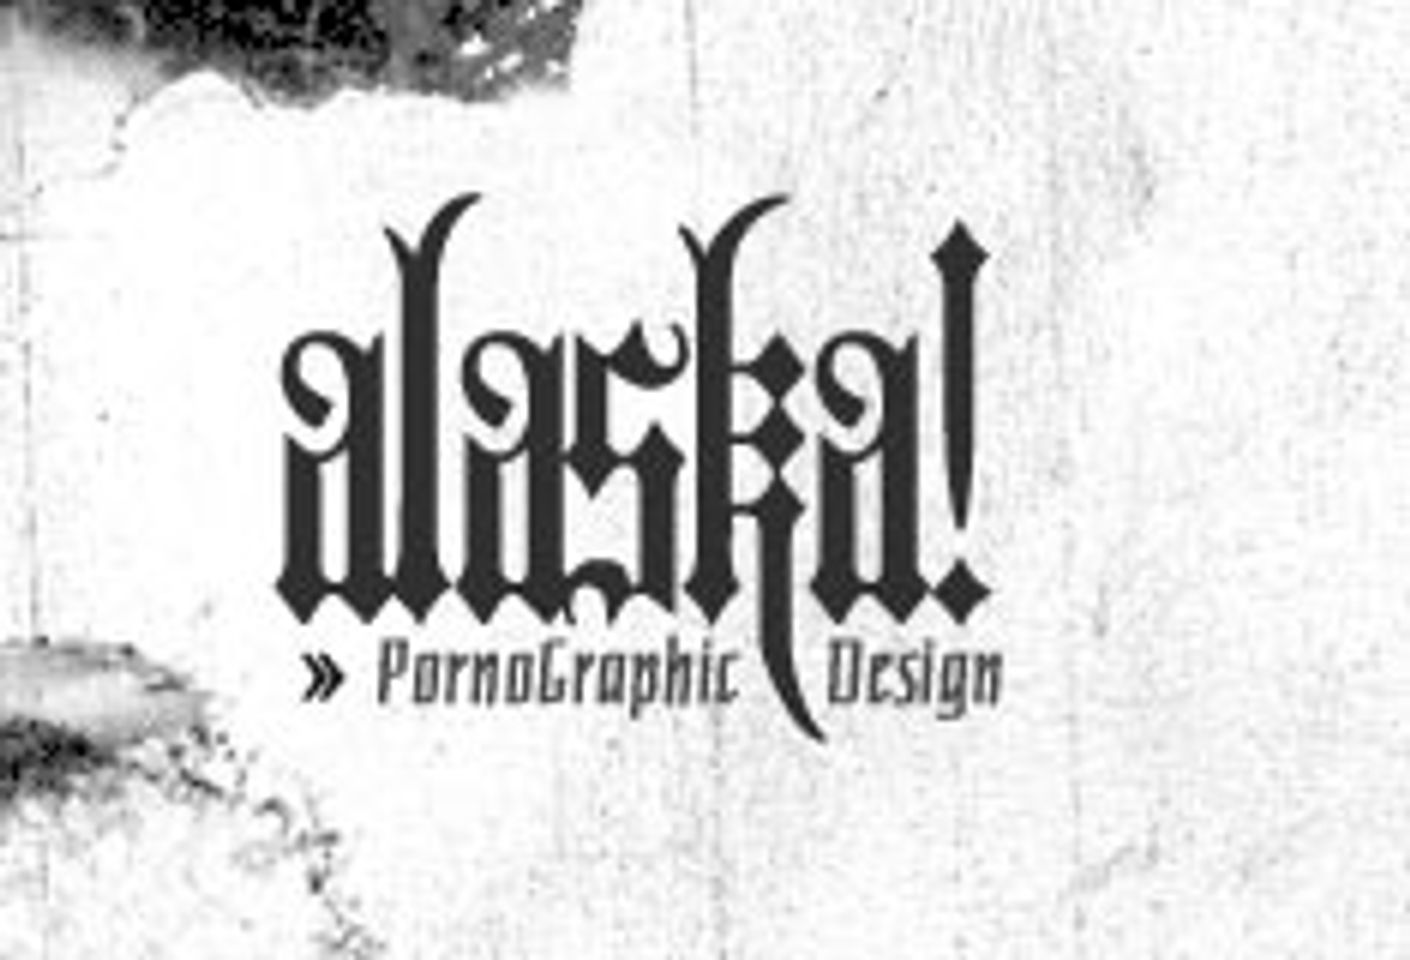 Graphic Designer Alaska Launches New Site